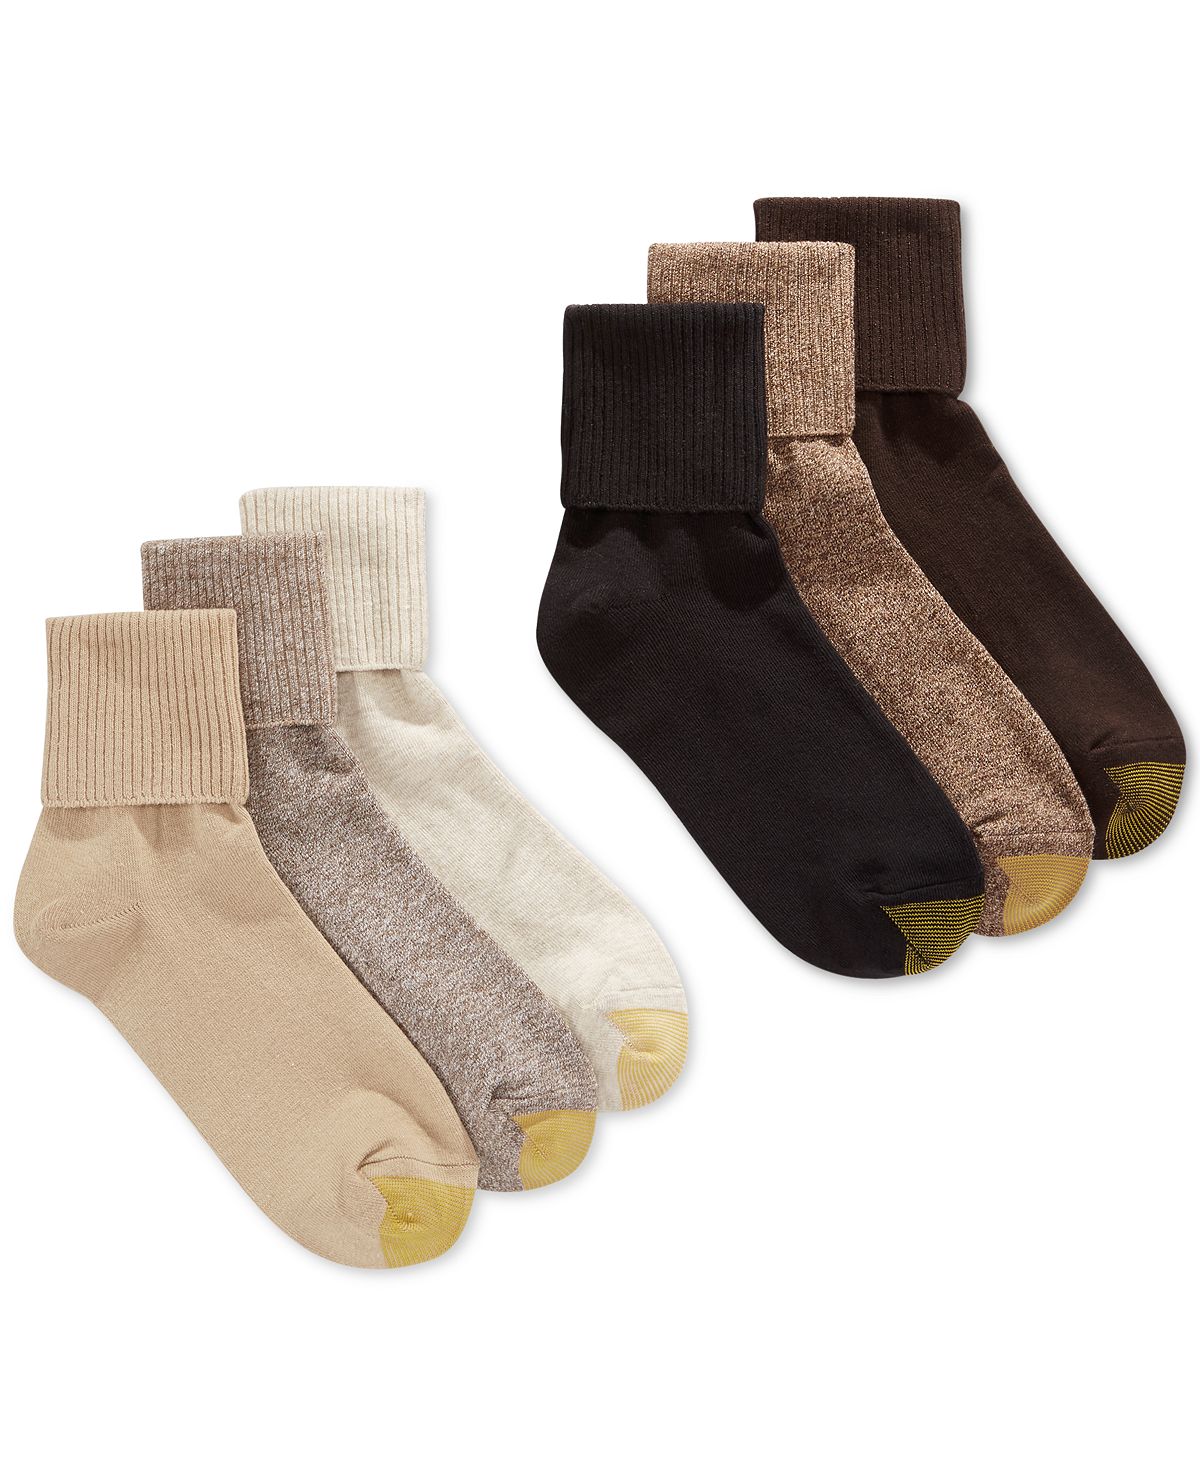 Женские повседневные носки с поворотными манжетами (6 пар), также доступны в расширенных размерах Gold Toe цена и фото